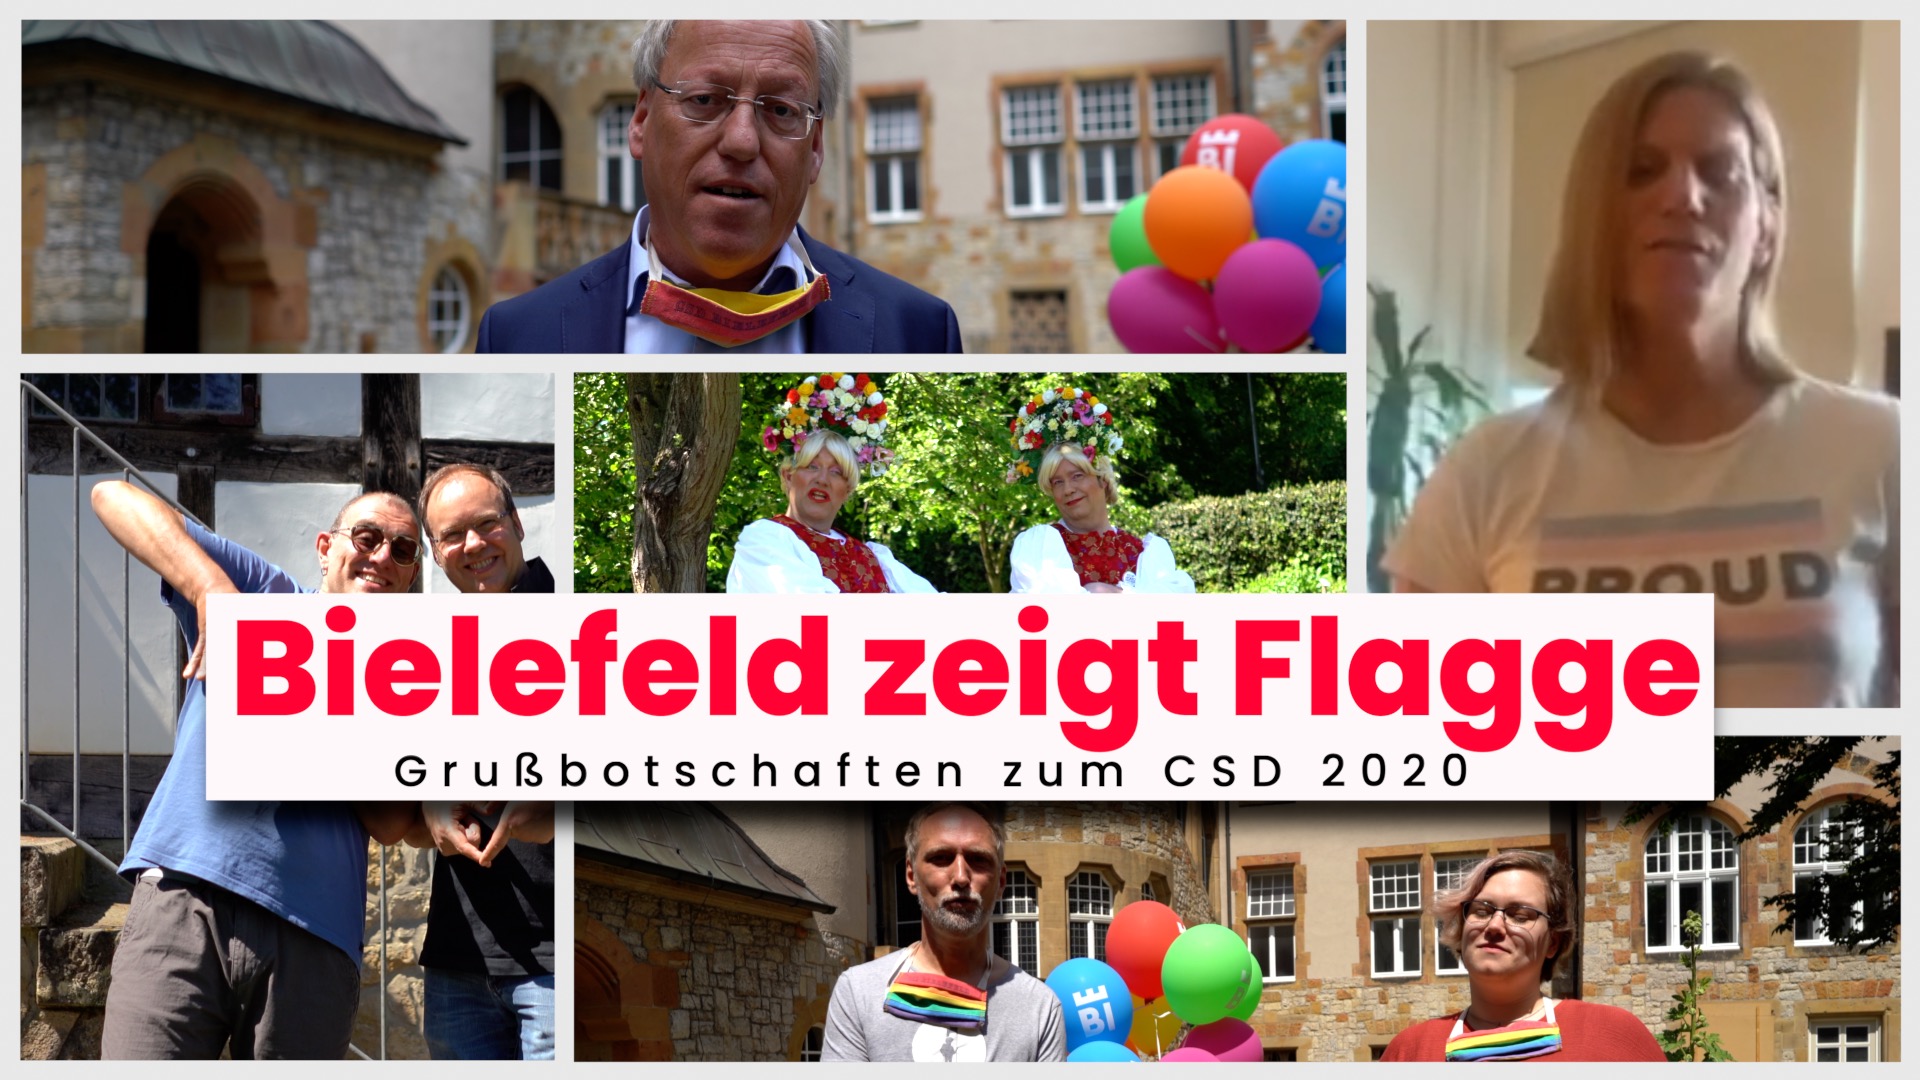 CSD 2020 - Bielefeld zeigt Flagge - Marischka & Julischka (aus Ungarn): Die Syphilis